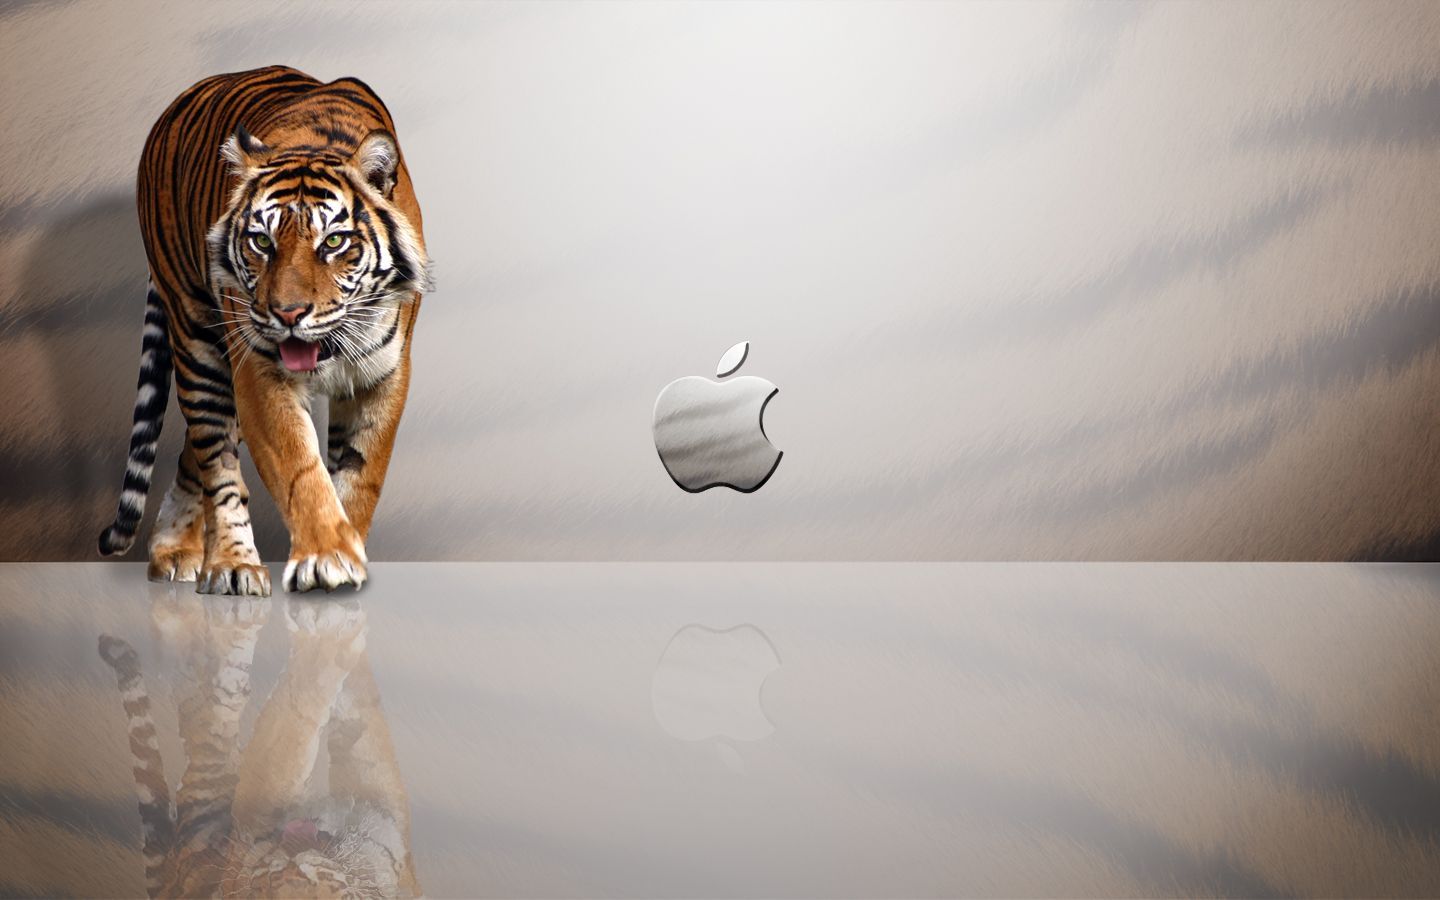 Apple mac pro wallpaper - danasrhp.top